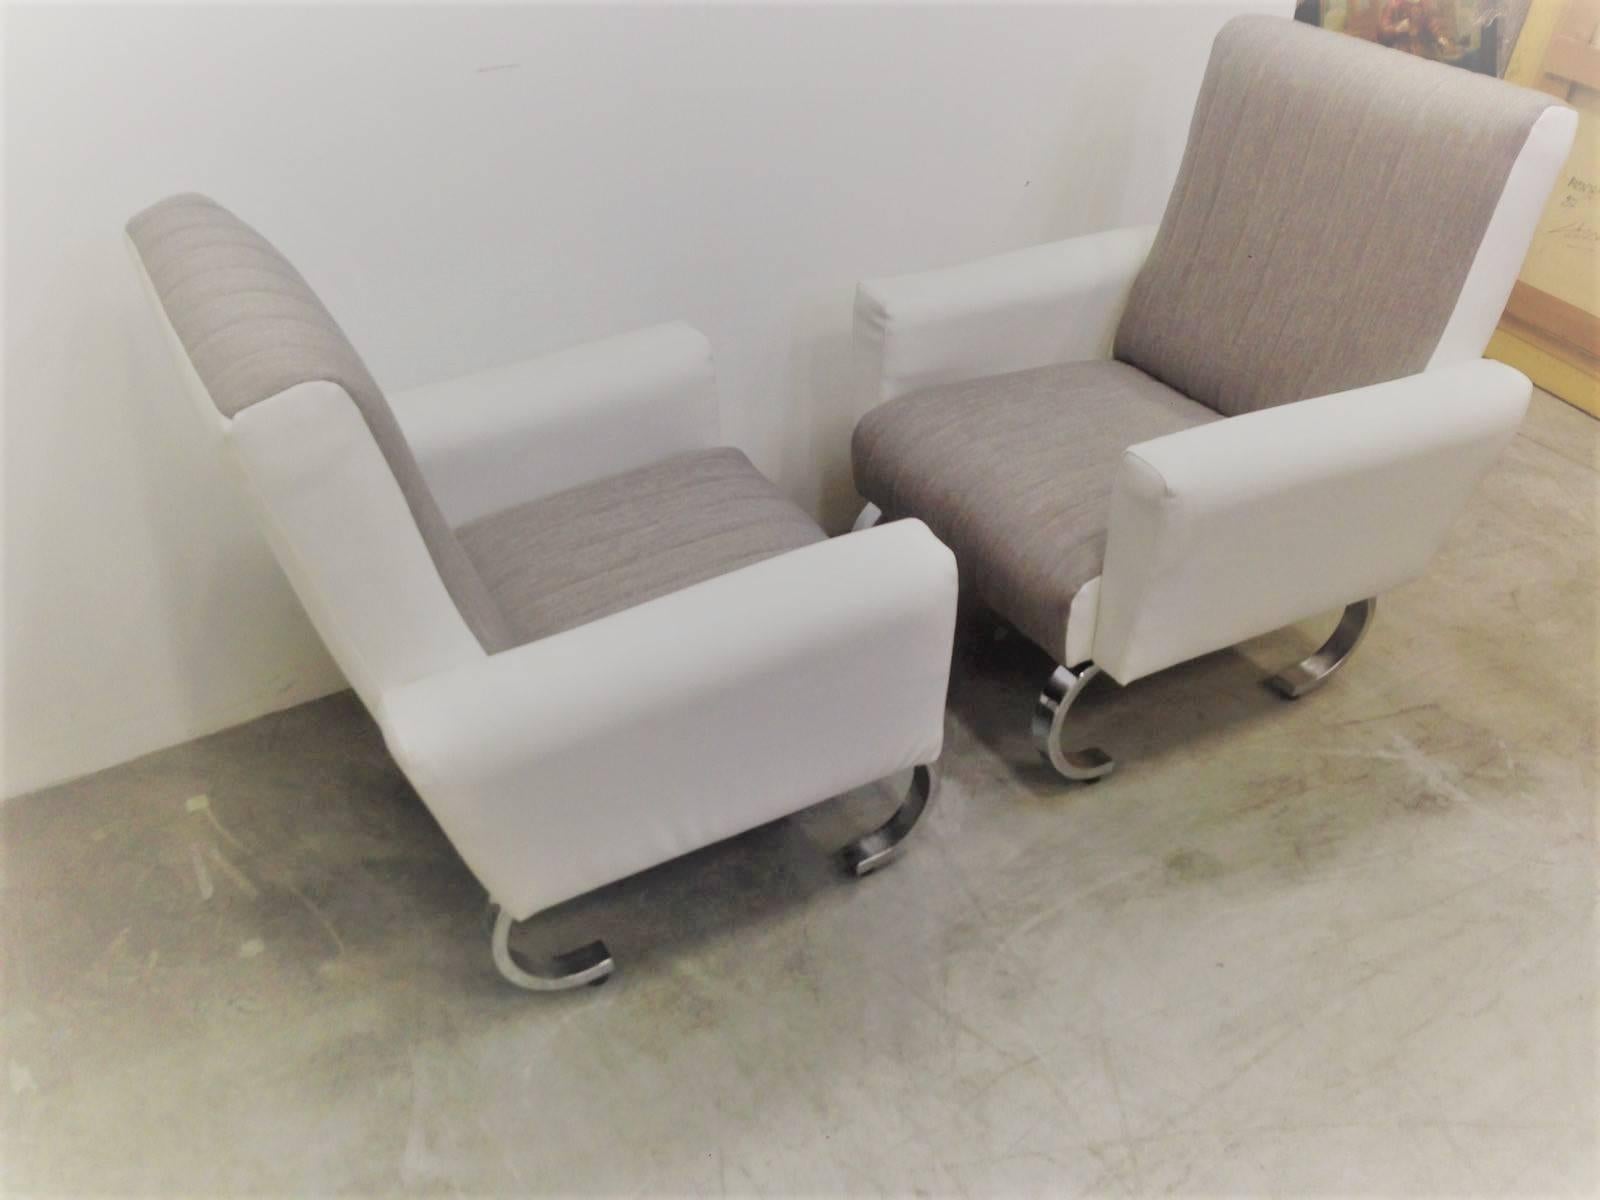 Exklusives Paar eleganter italienischer Sessel aus der Jahrhundertmitte mit Metallgestell.
Ein Paar äußerst stilvolle Loungesessel mit hoher Rückenlehne aus der Mitte des Jahrhunderts in aerodynamischem Design mit originellen, gebogenen Gestellen